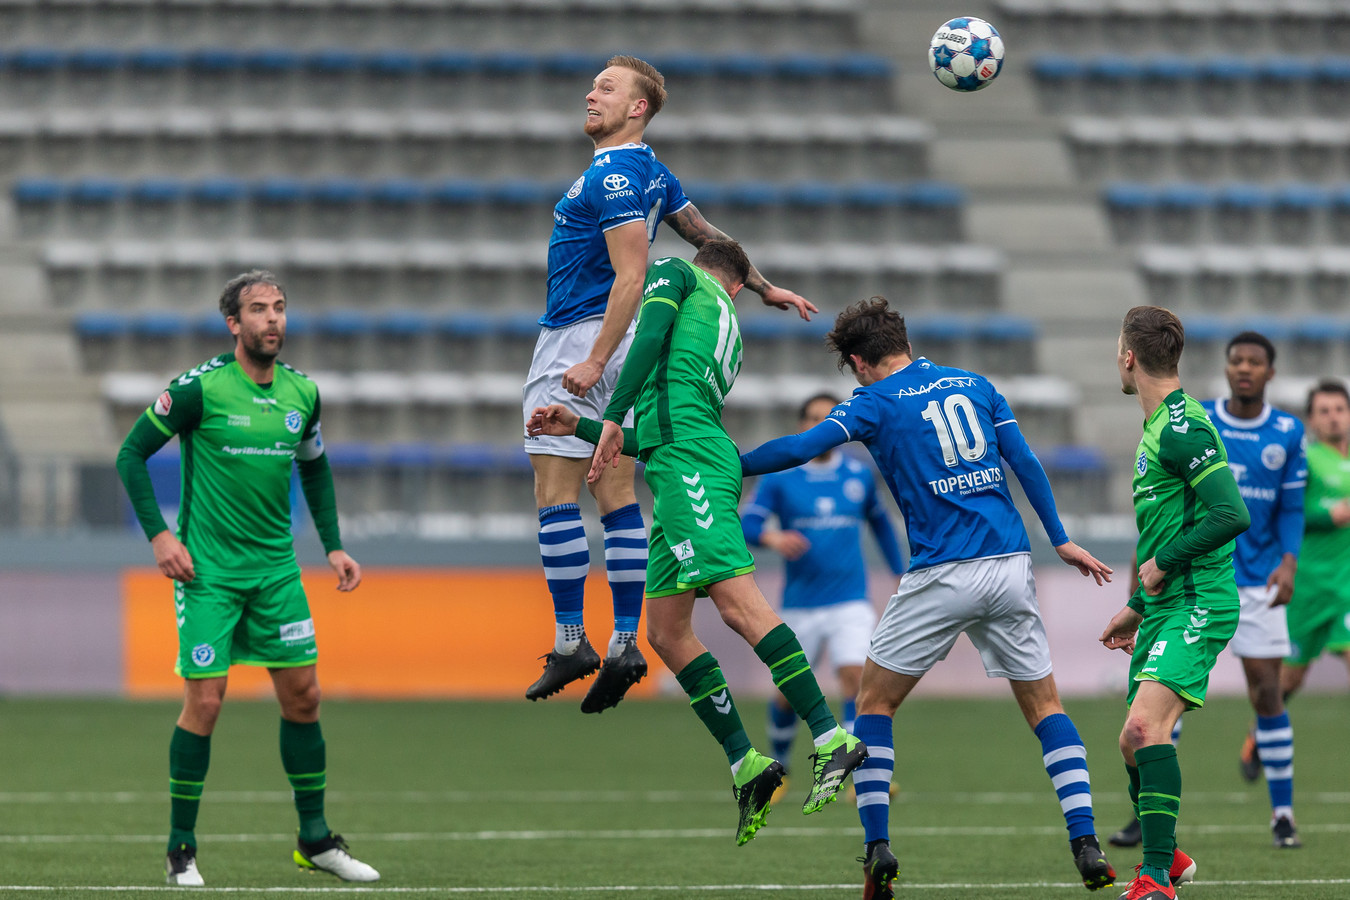 Junior van der Velden torent boven alles en iedereen uit in de defensie van FC Den Bosch. De verdediger werd in de slotfase nog mee naar voor gestuurd als vijfde aanvaller.